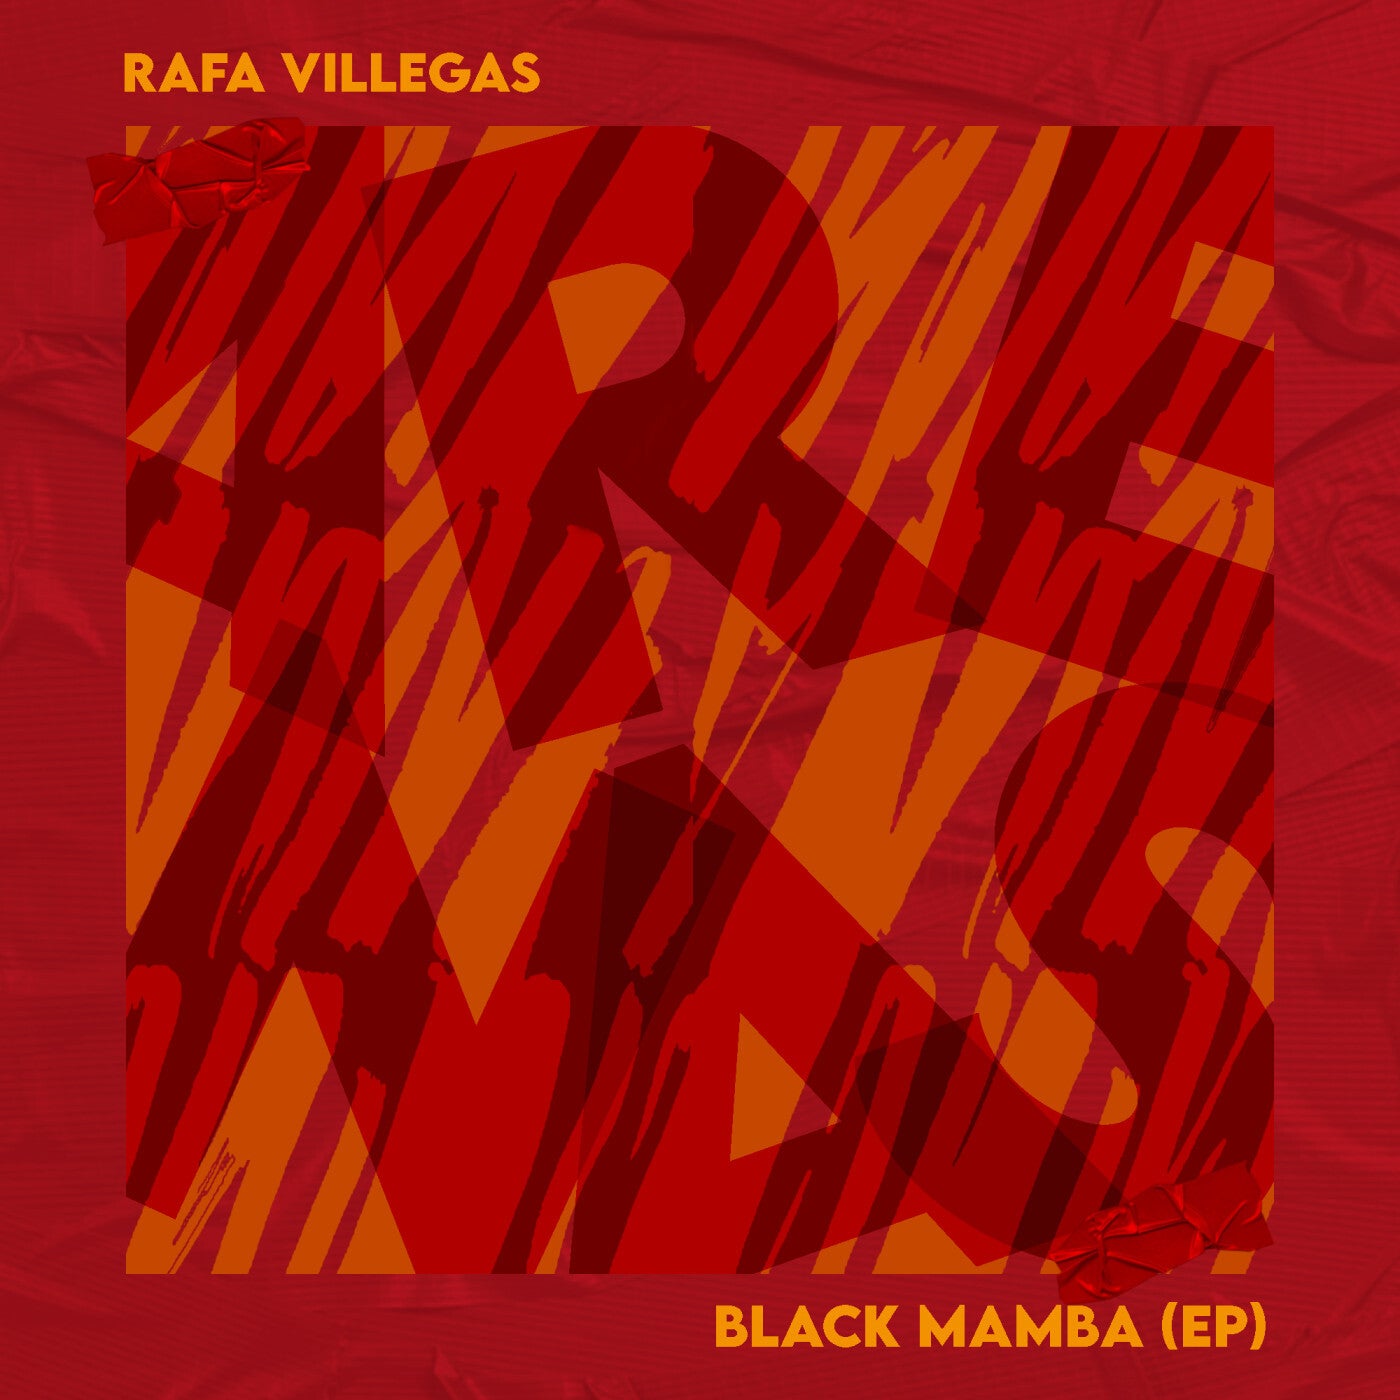 Black Mamba EP